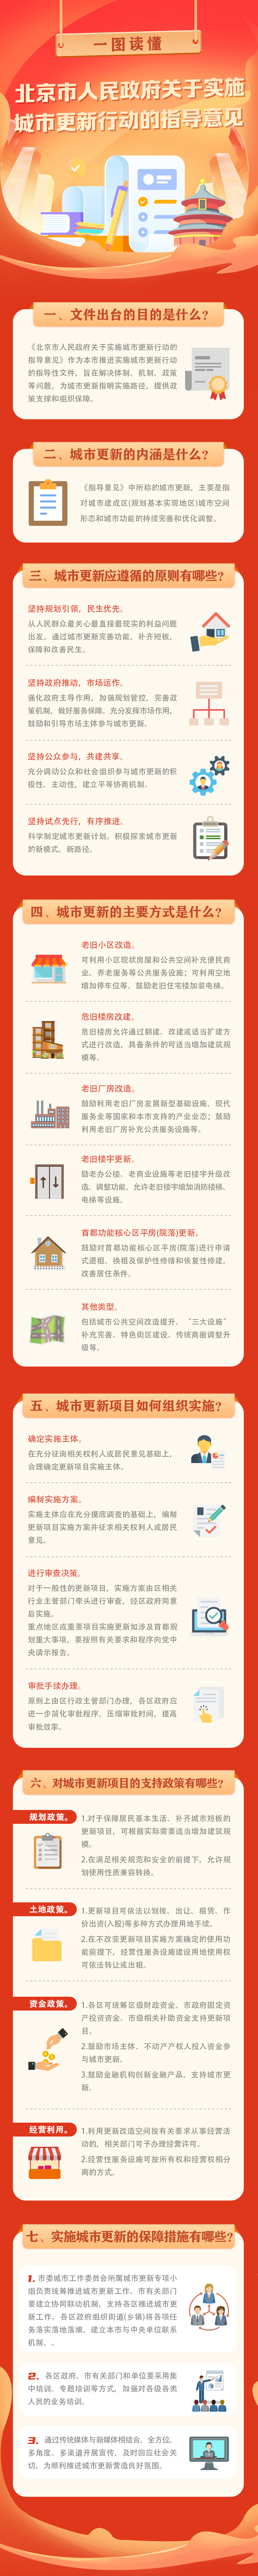 一圖讀懂《北京市人民政府關於實施城市更新行動的指導意見》-.jpg